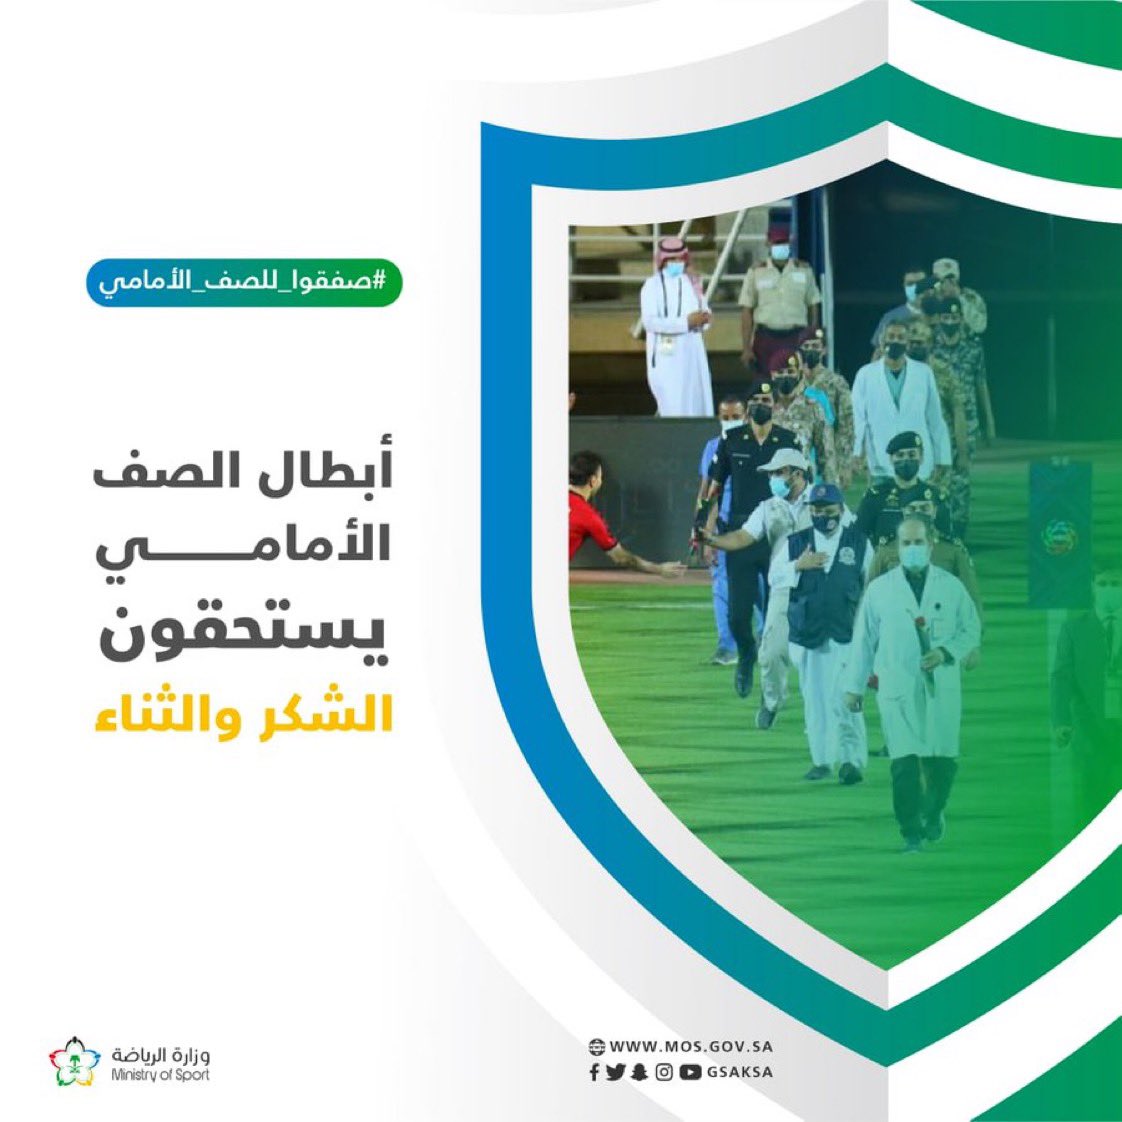 وزارة الرياضة تُطلق مبادرة “صفقوا للصف الأمامي”